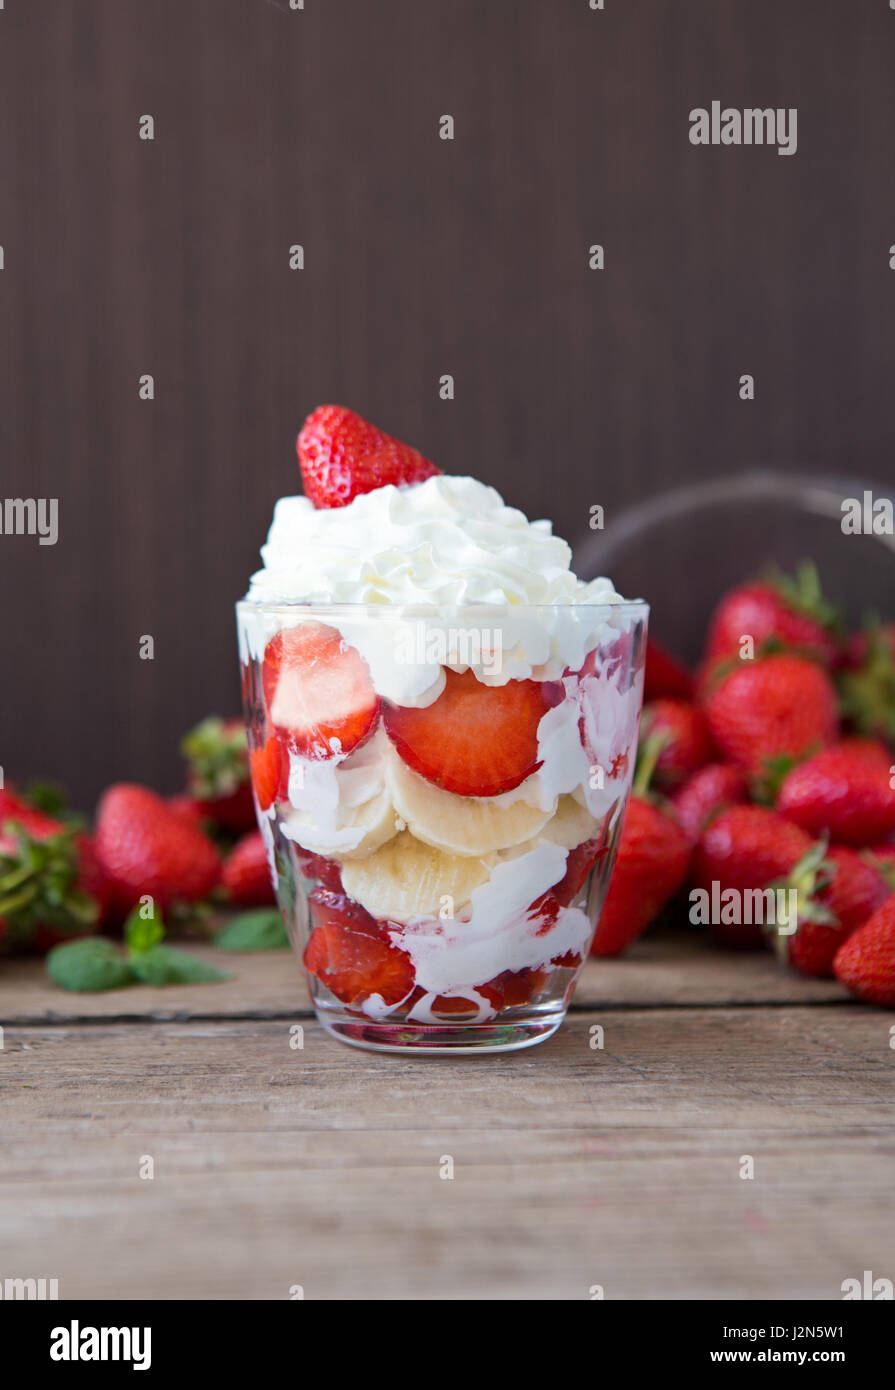 Fresh strawberries and banana dessert layered with whipped cream Stock Photo